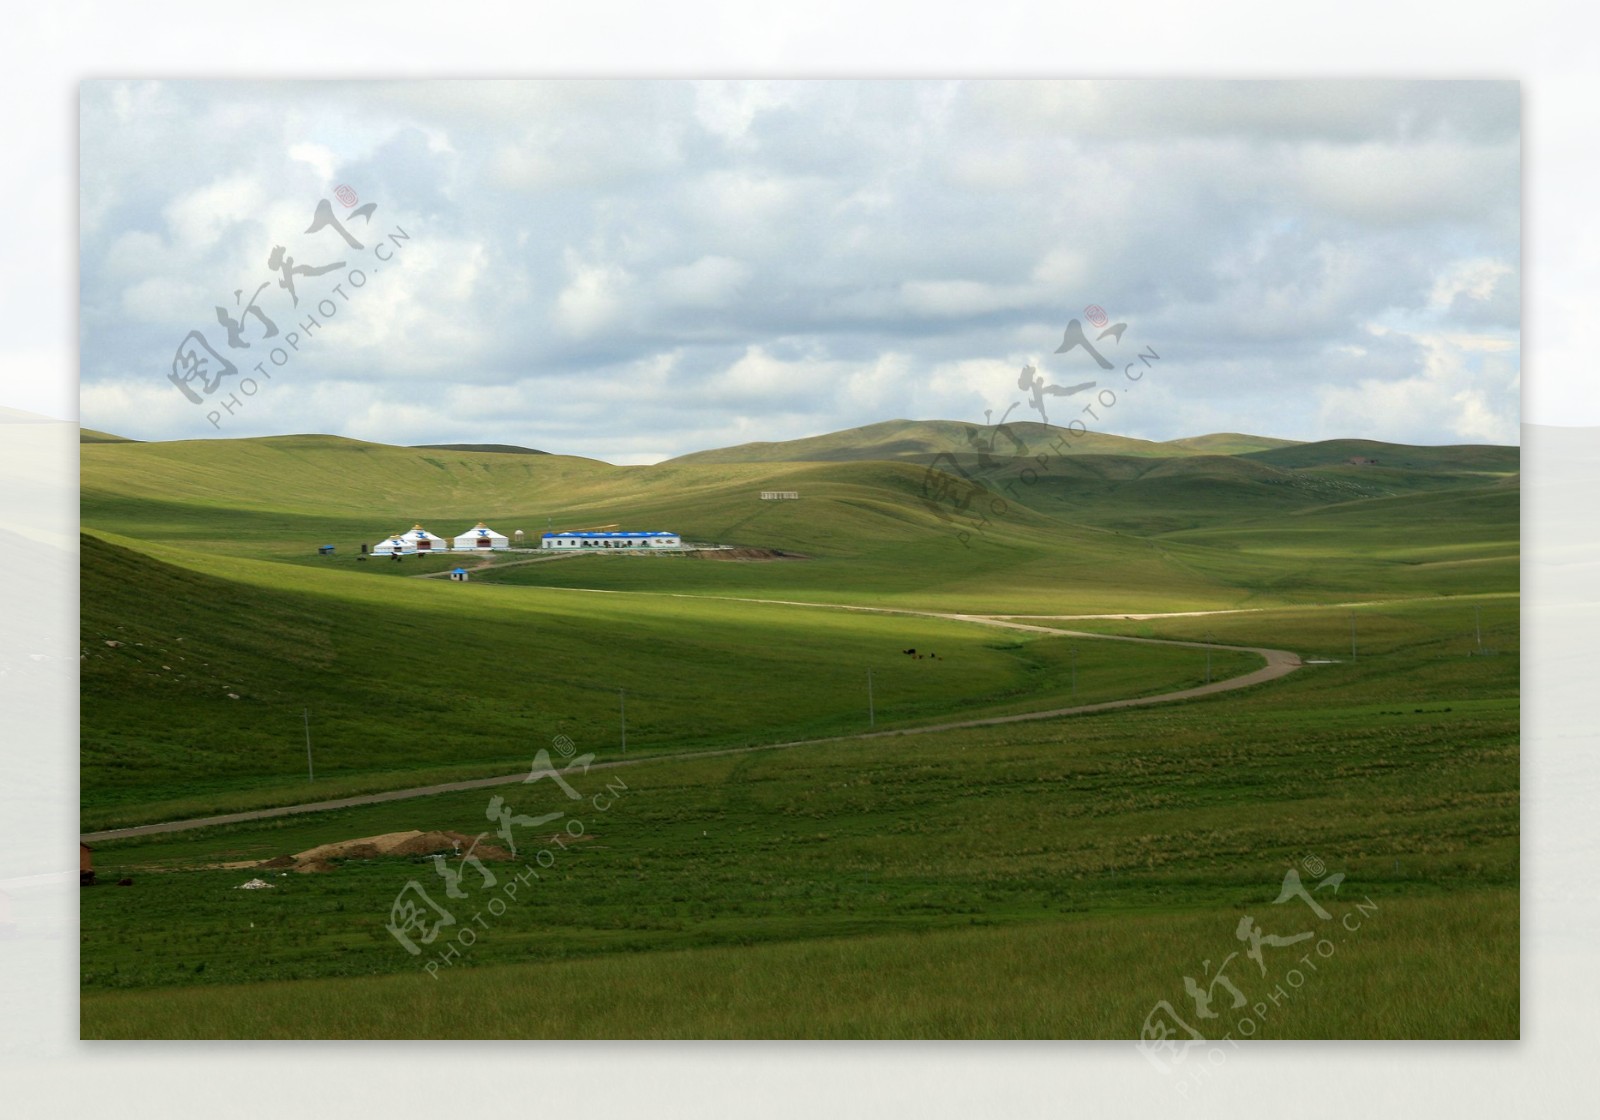 内蒙古乌里雅斯太山旅游景区风景